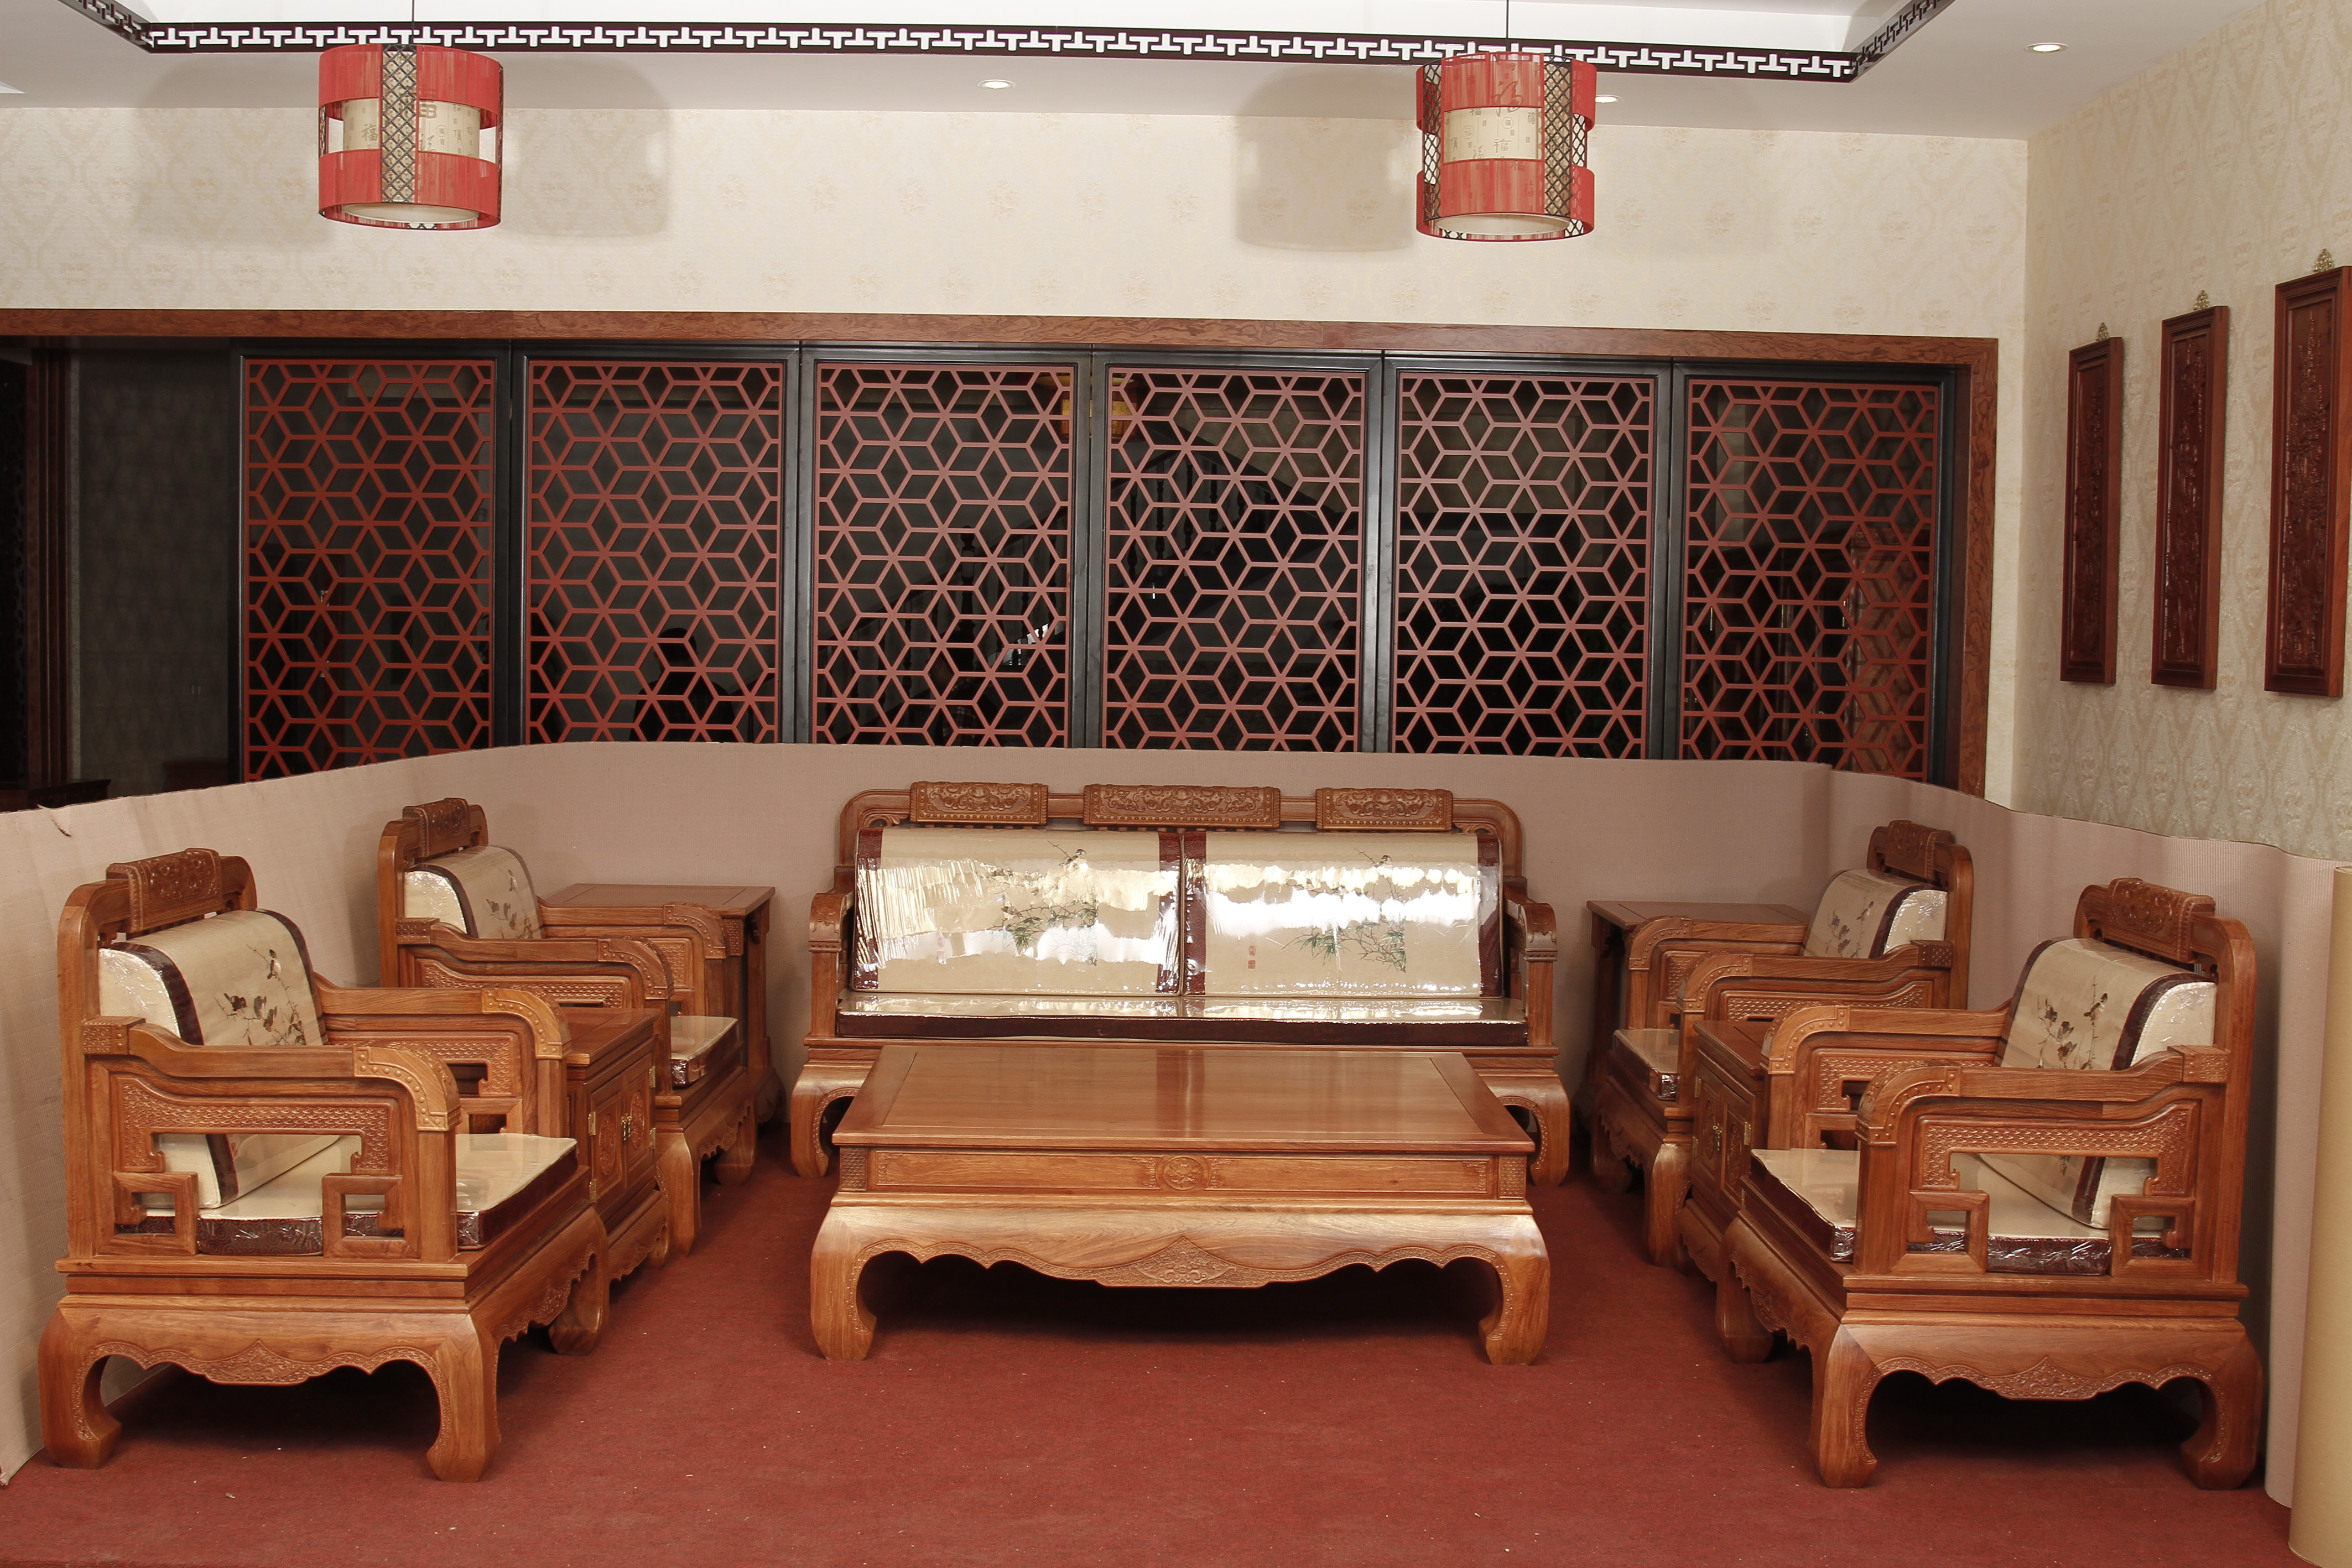 供应用于客厅的福建家具厂鲁创红木家具价格和谐世家沙发图片